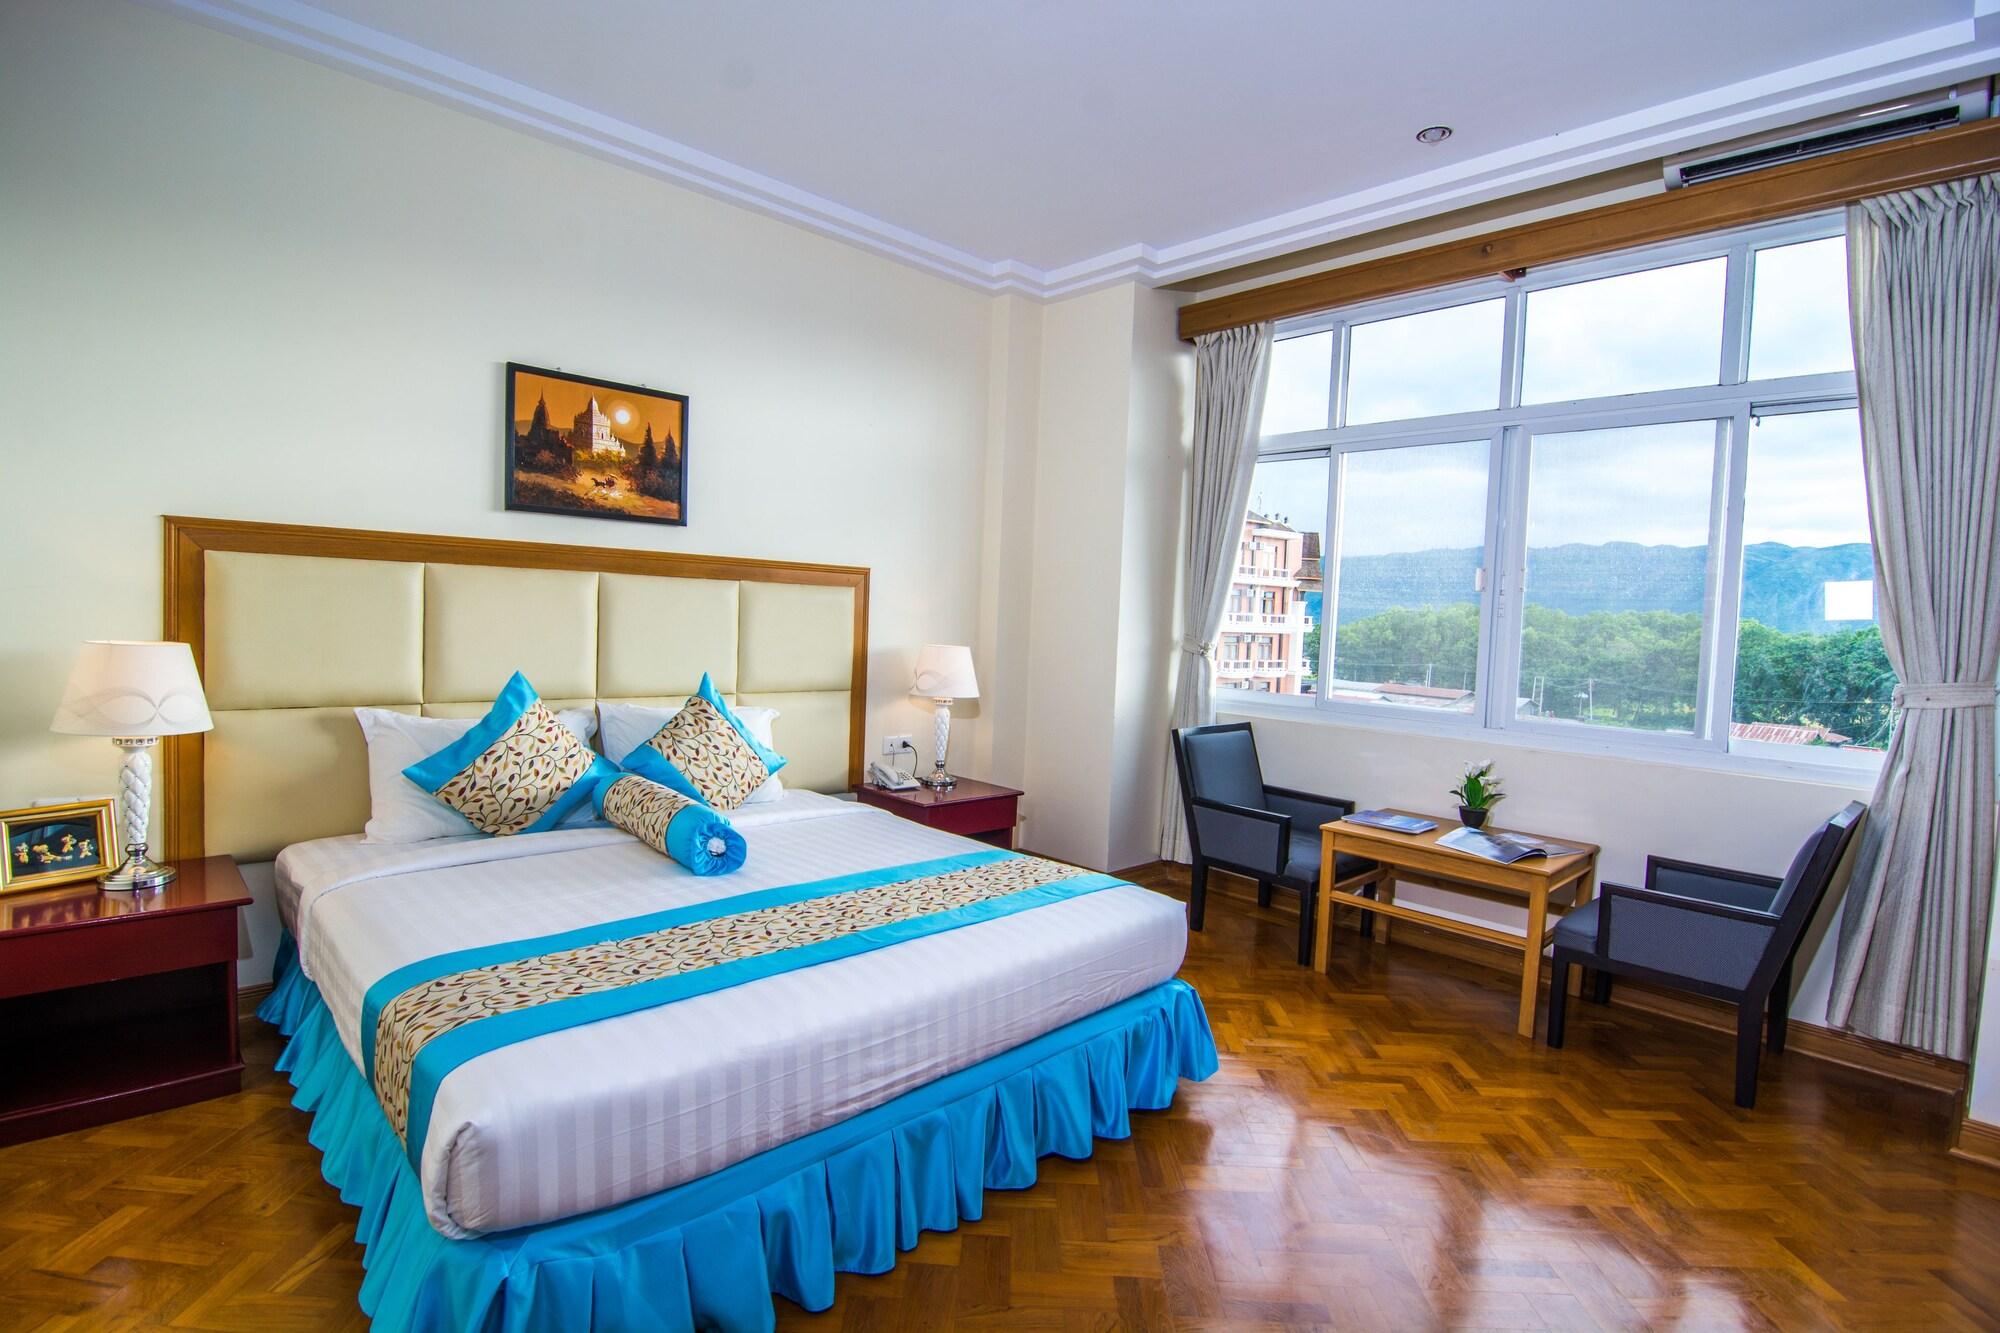 Royal Inlay Hotel Nyaung Shwe Zewnętrze zdjęcie